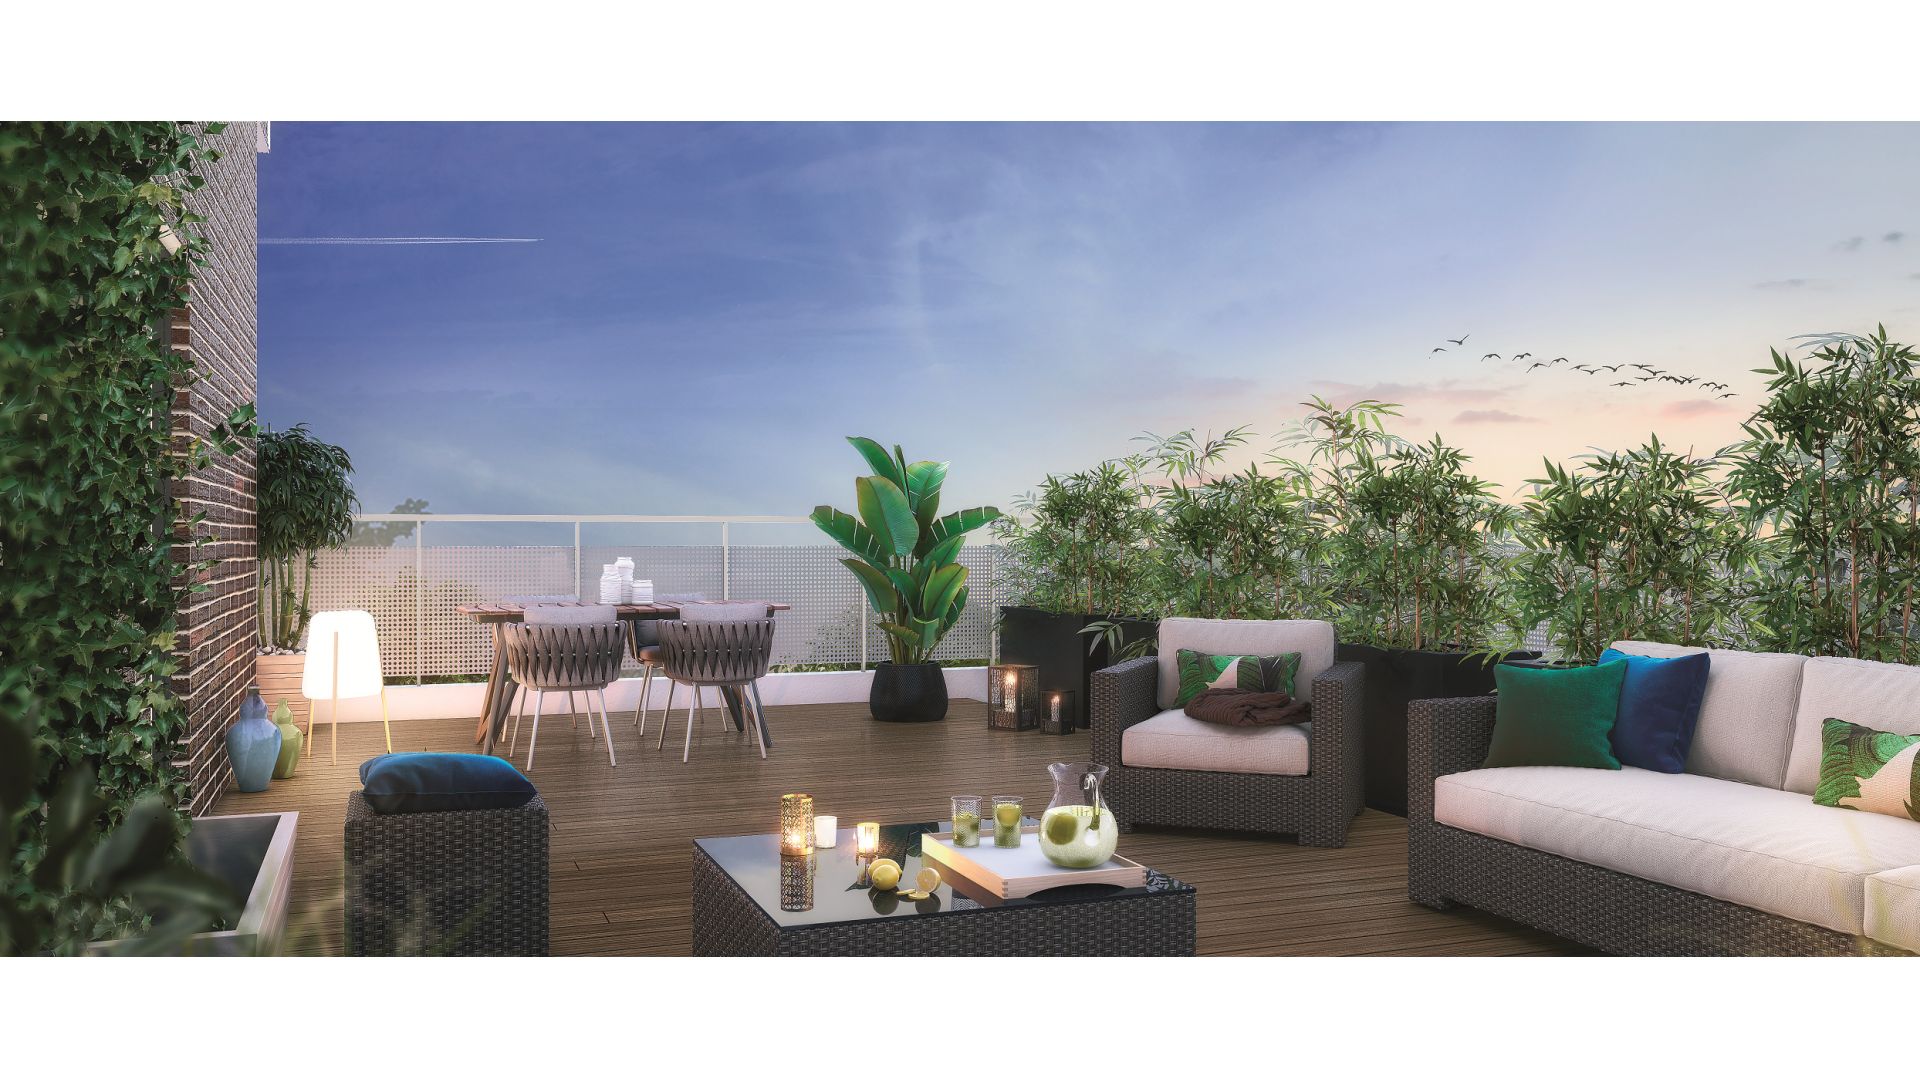 GreenCity immobilier - Nanterre 92000 - Résidence Le Cosy - appartements neufs du T1Bis au T4 - vue terrasse